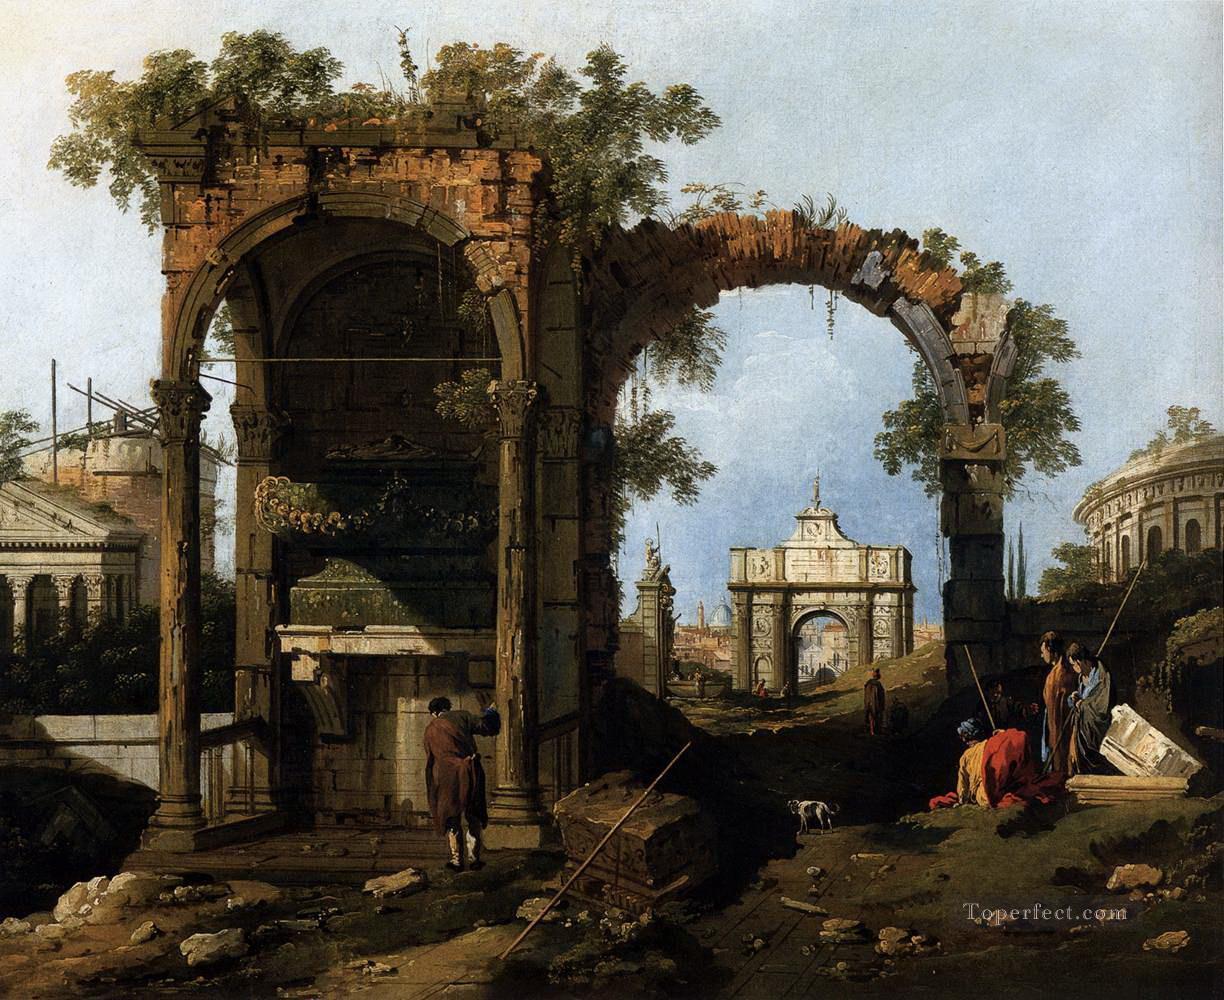 Capriccio con ruinas y edificios clásicos Canaletto Pintura al óleo